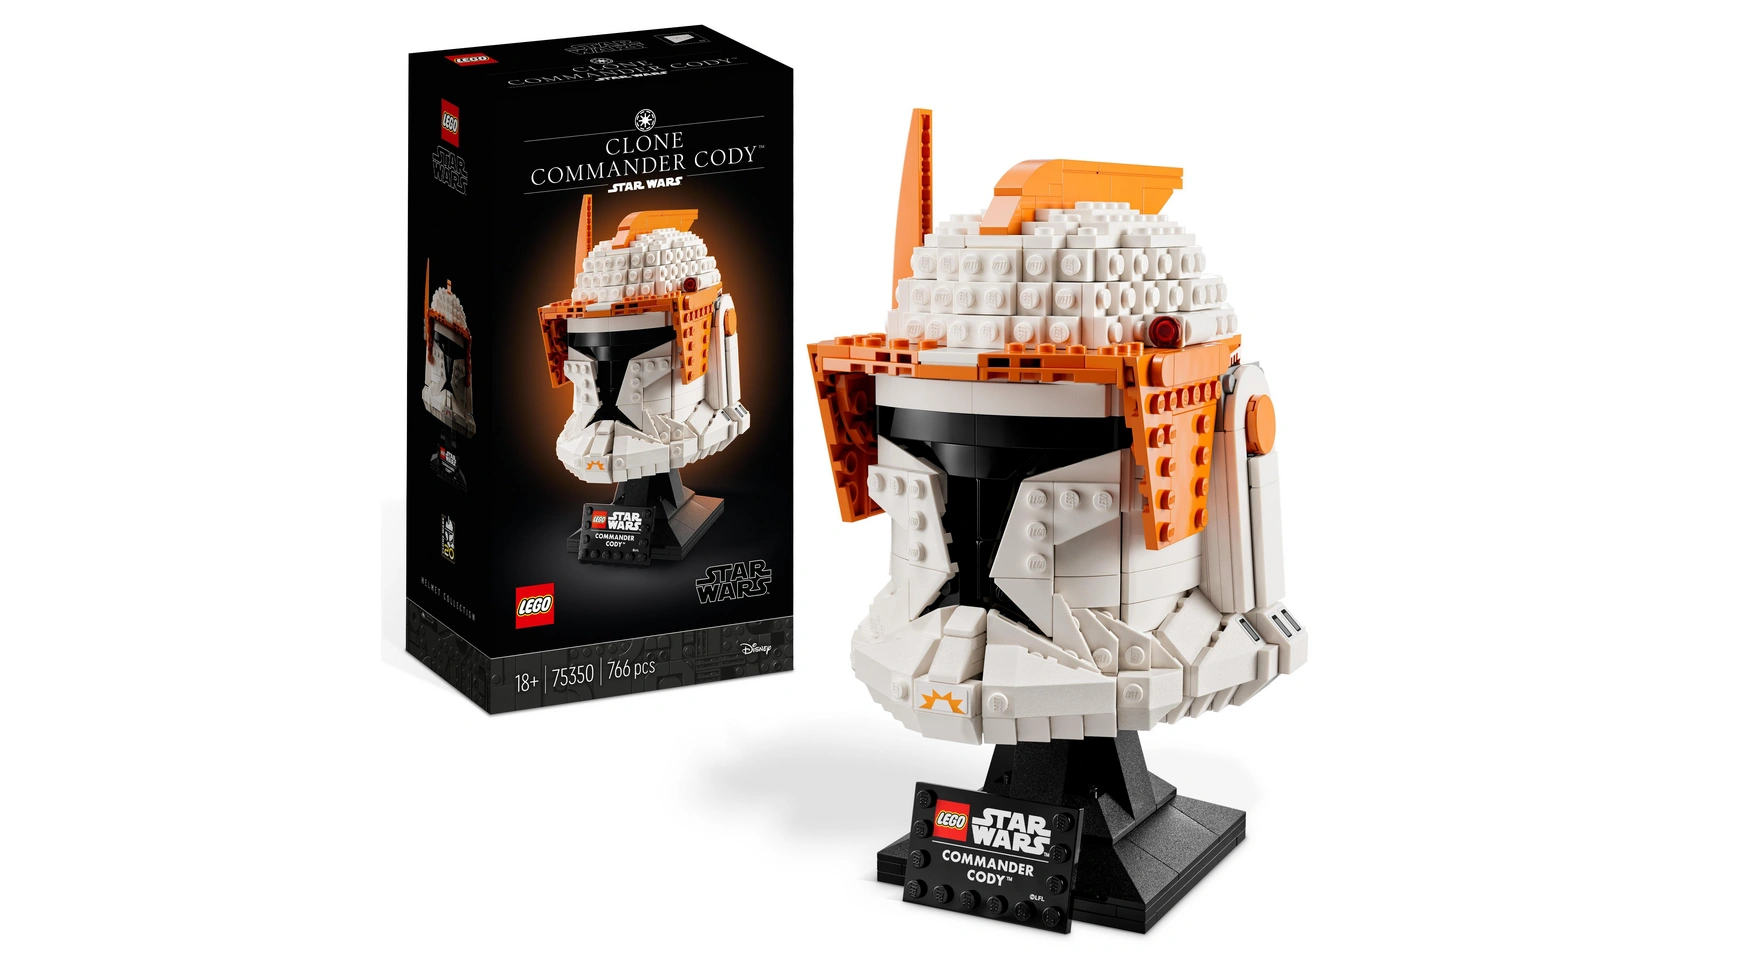 Lego Star Wars Набор шлемов командира клонов Коди для взрослых конструктор lego star wars 75307 звездные войны